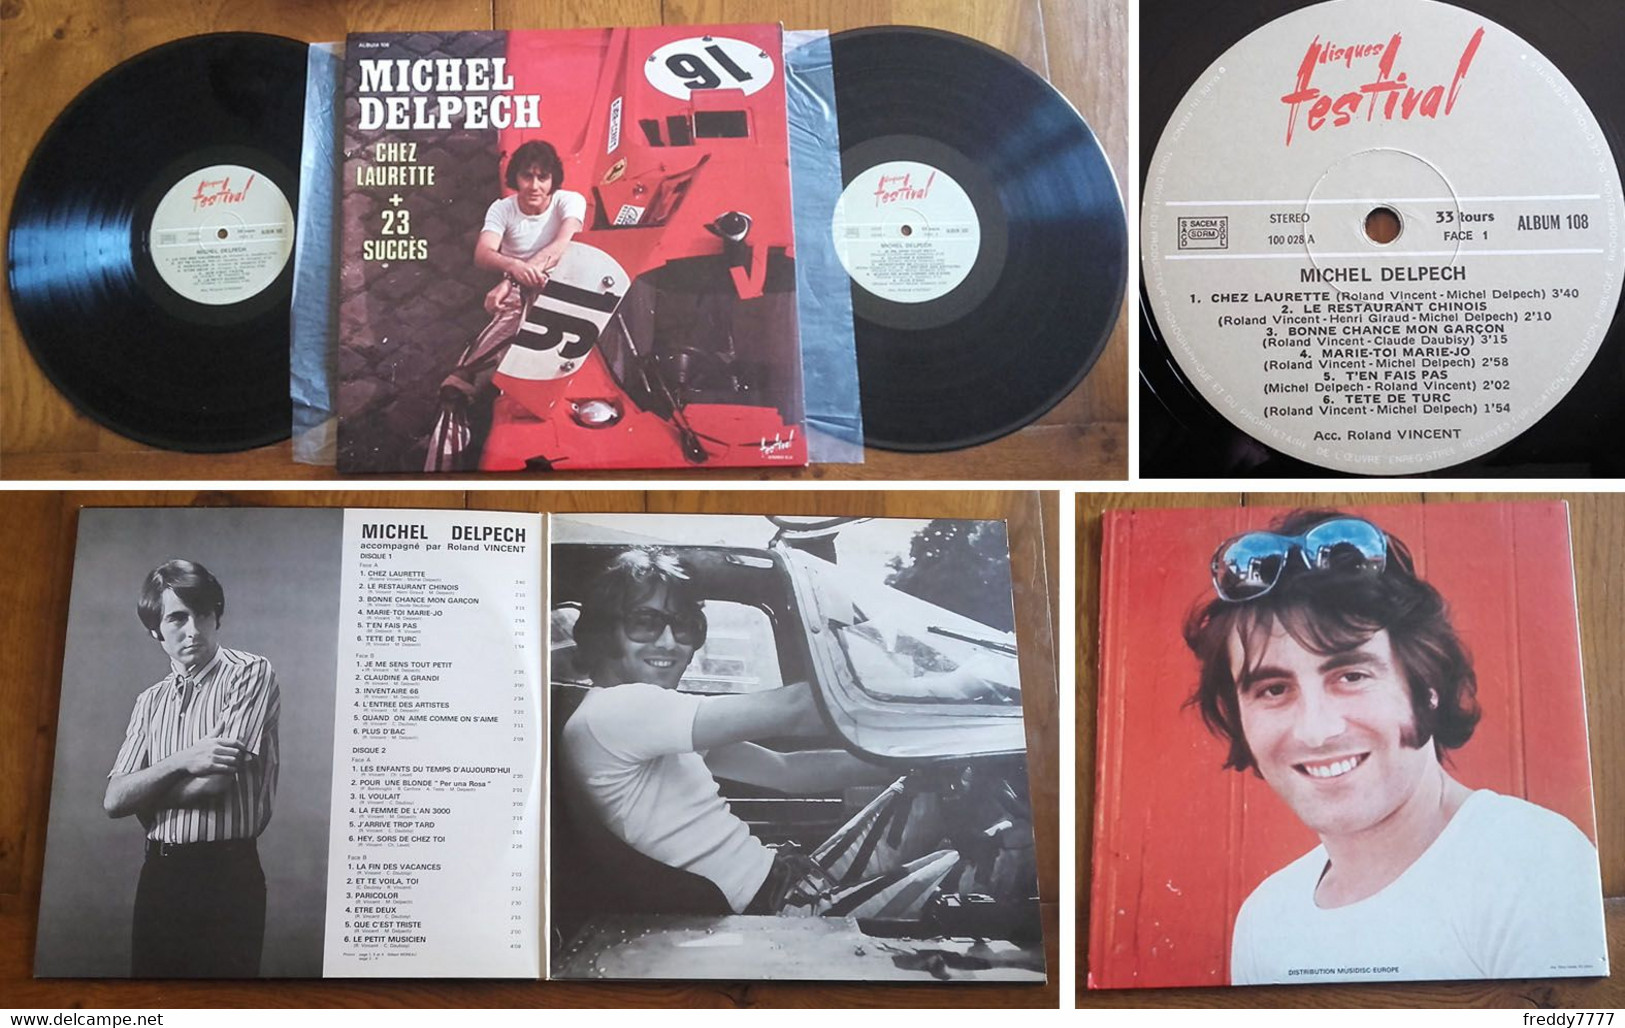 RARE French DOUBLE LP 33t RPM (12") MICHEL DELPECH (Gatefold P/s, 1974) - Collectors